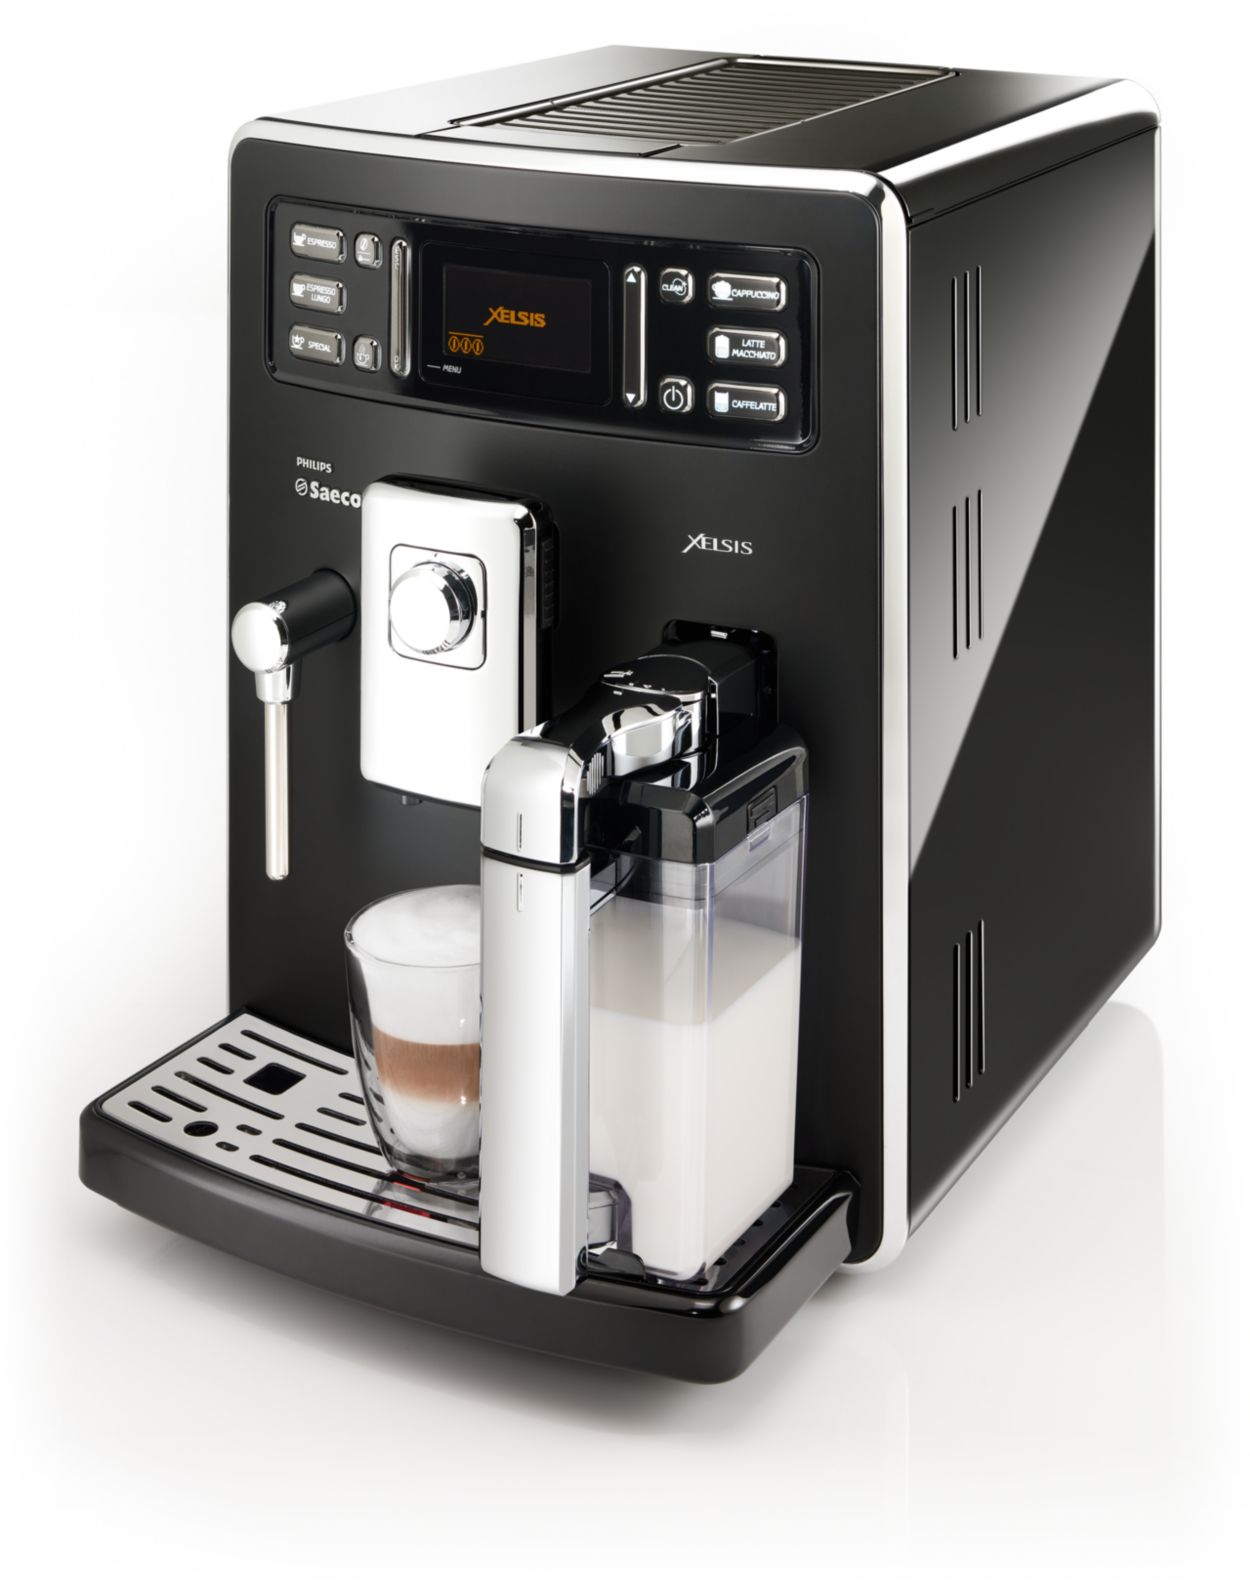 Macchine caffè: tutte le macchine Philips e Saeco per il tuo caffè a casa